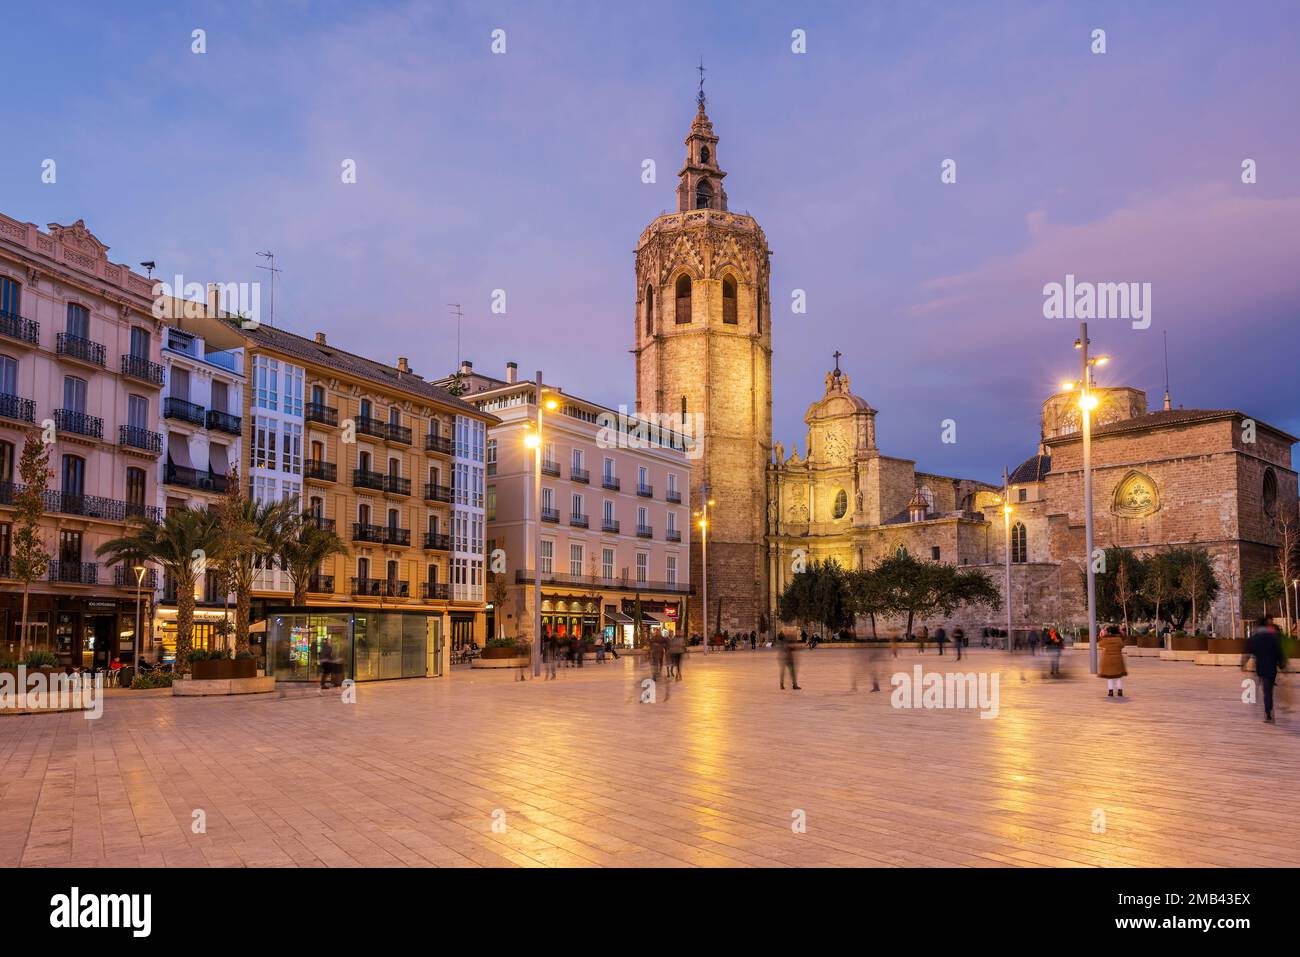 Plaza de la Reina y campanario de Micalet, Valencia, España Foto de stock